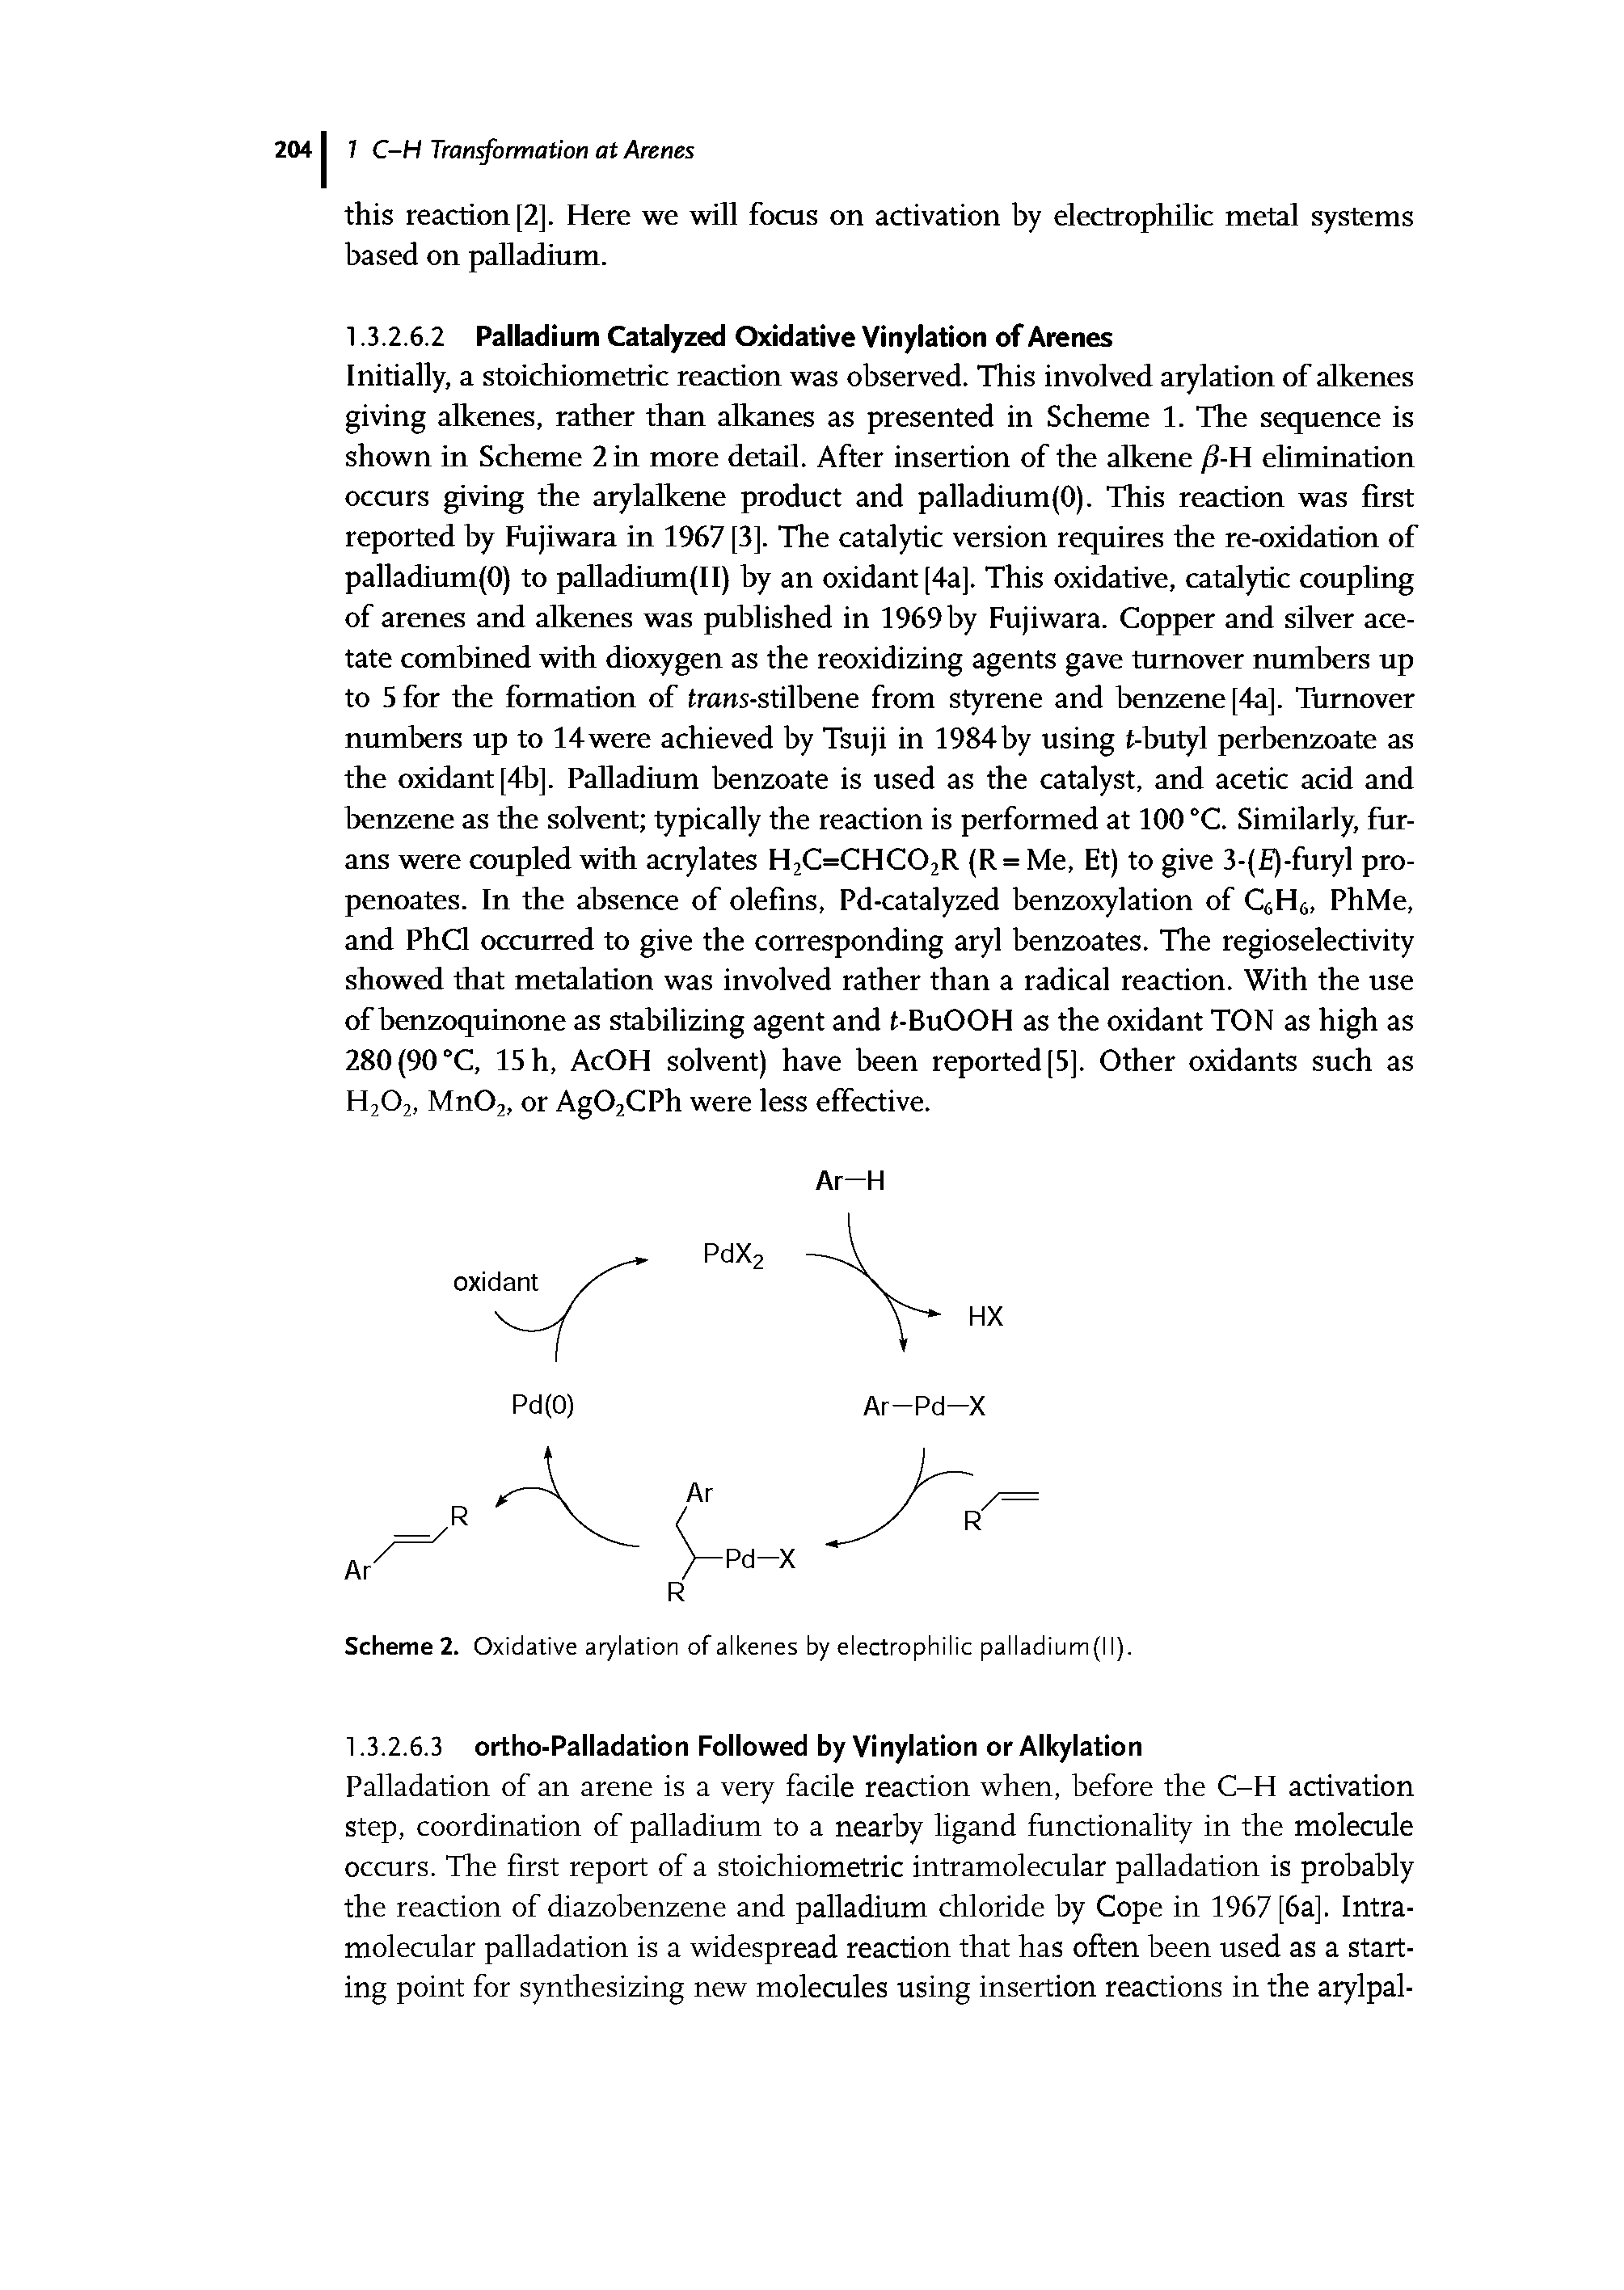 Scheme 2. Oxidative arylation of alkenes by electrophilic palladium (I I).